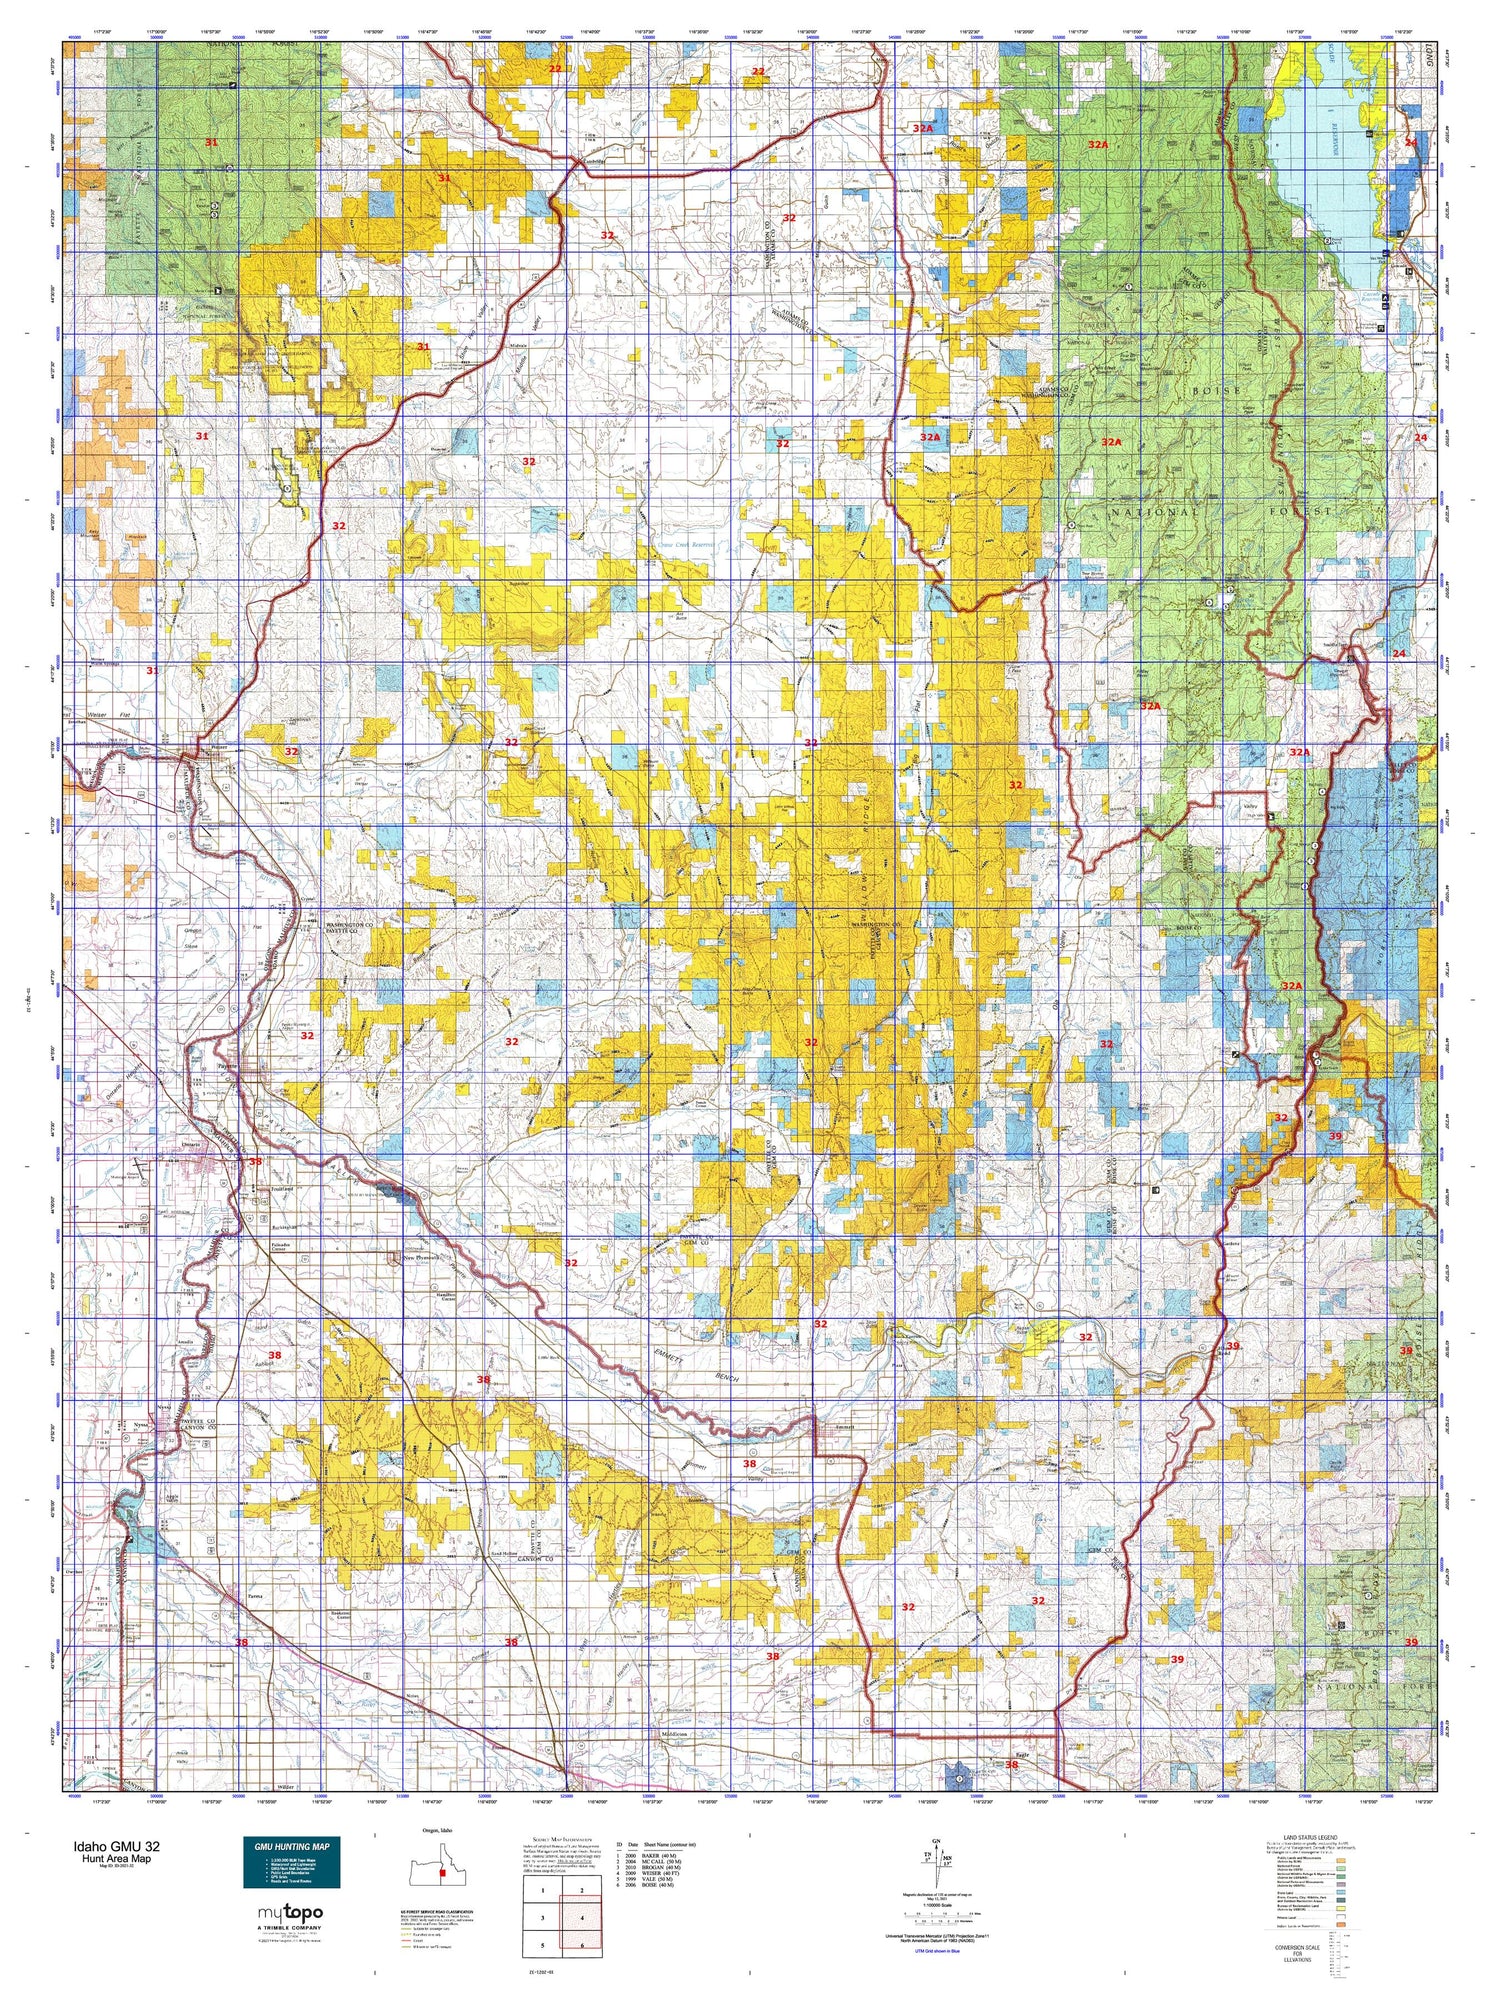 Idaho GMU 32 Map Image